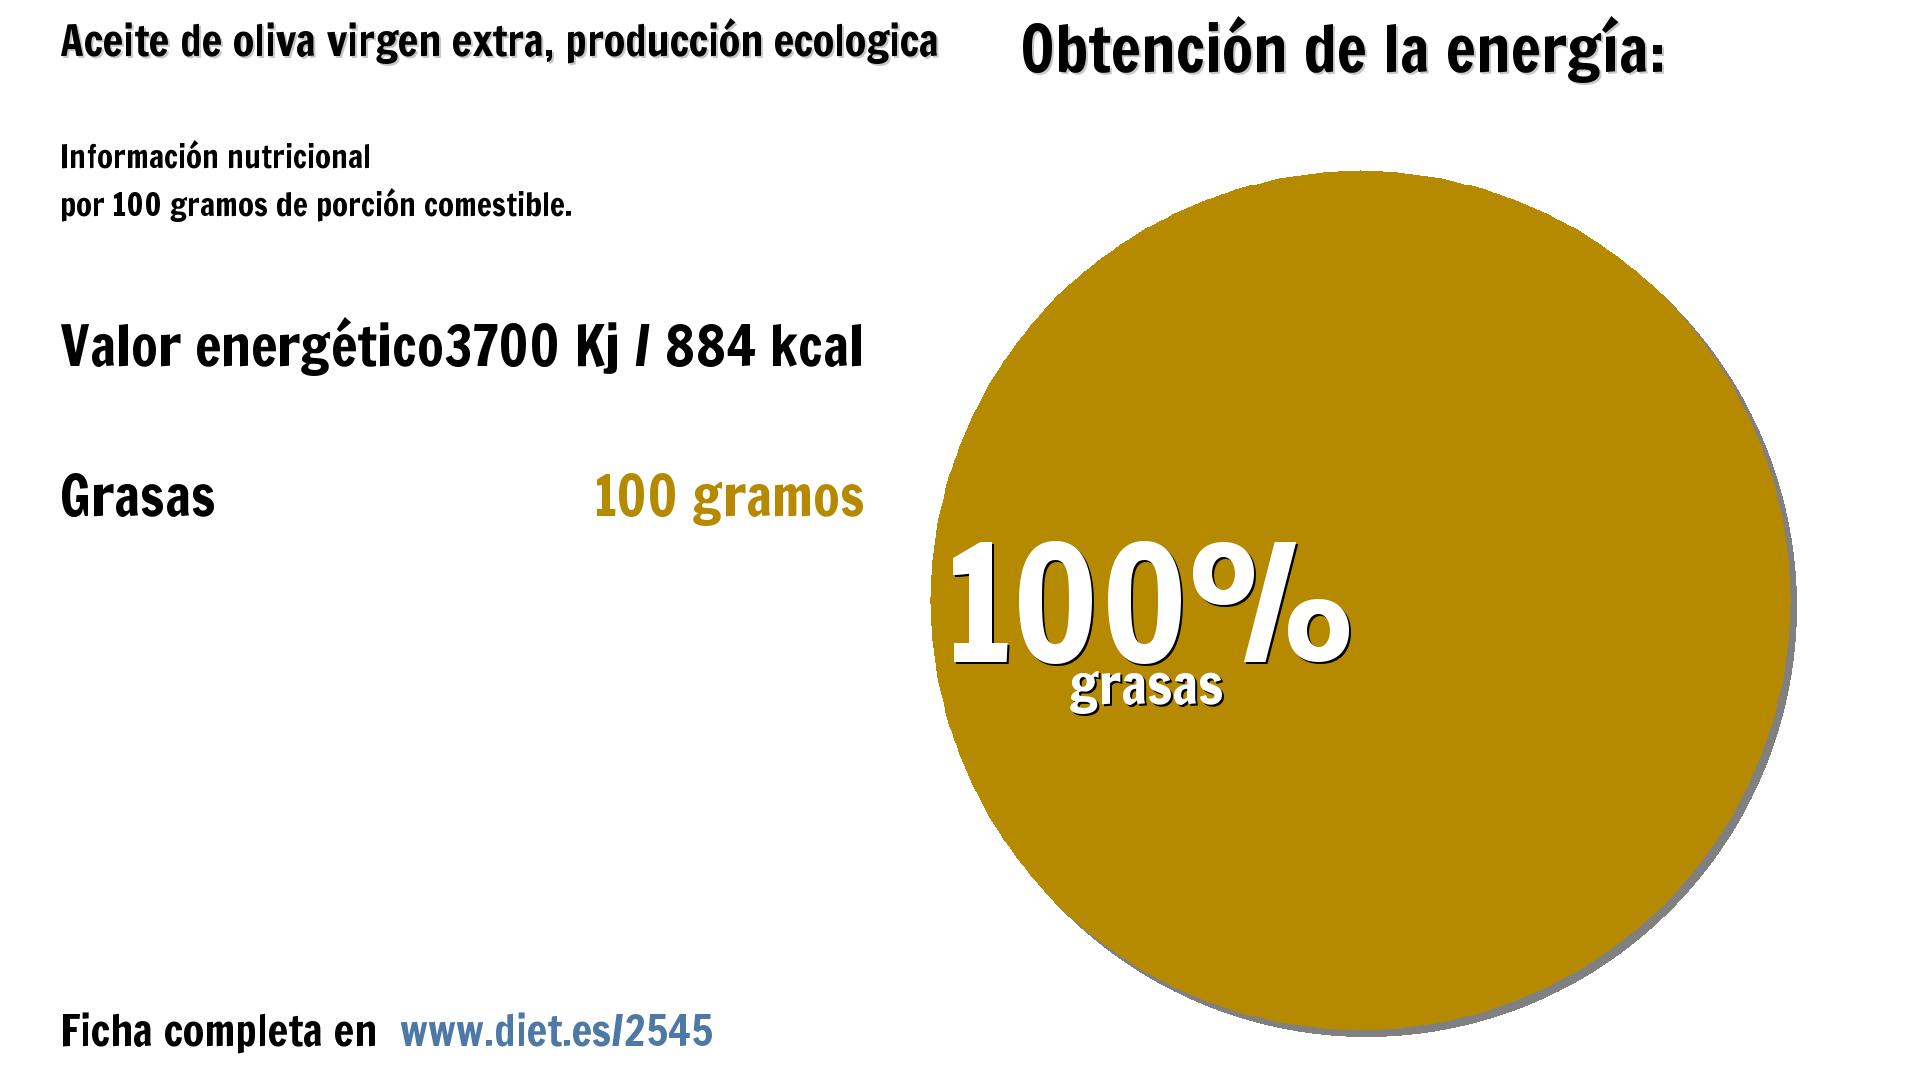 Aceite de oliva virgen extra, producción ecologica: energía 3700 Kj y grasas 100 g.